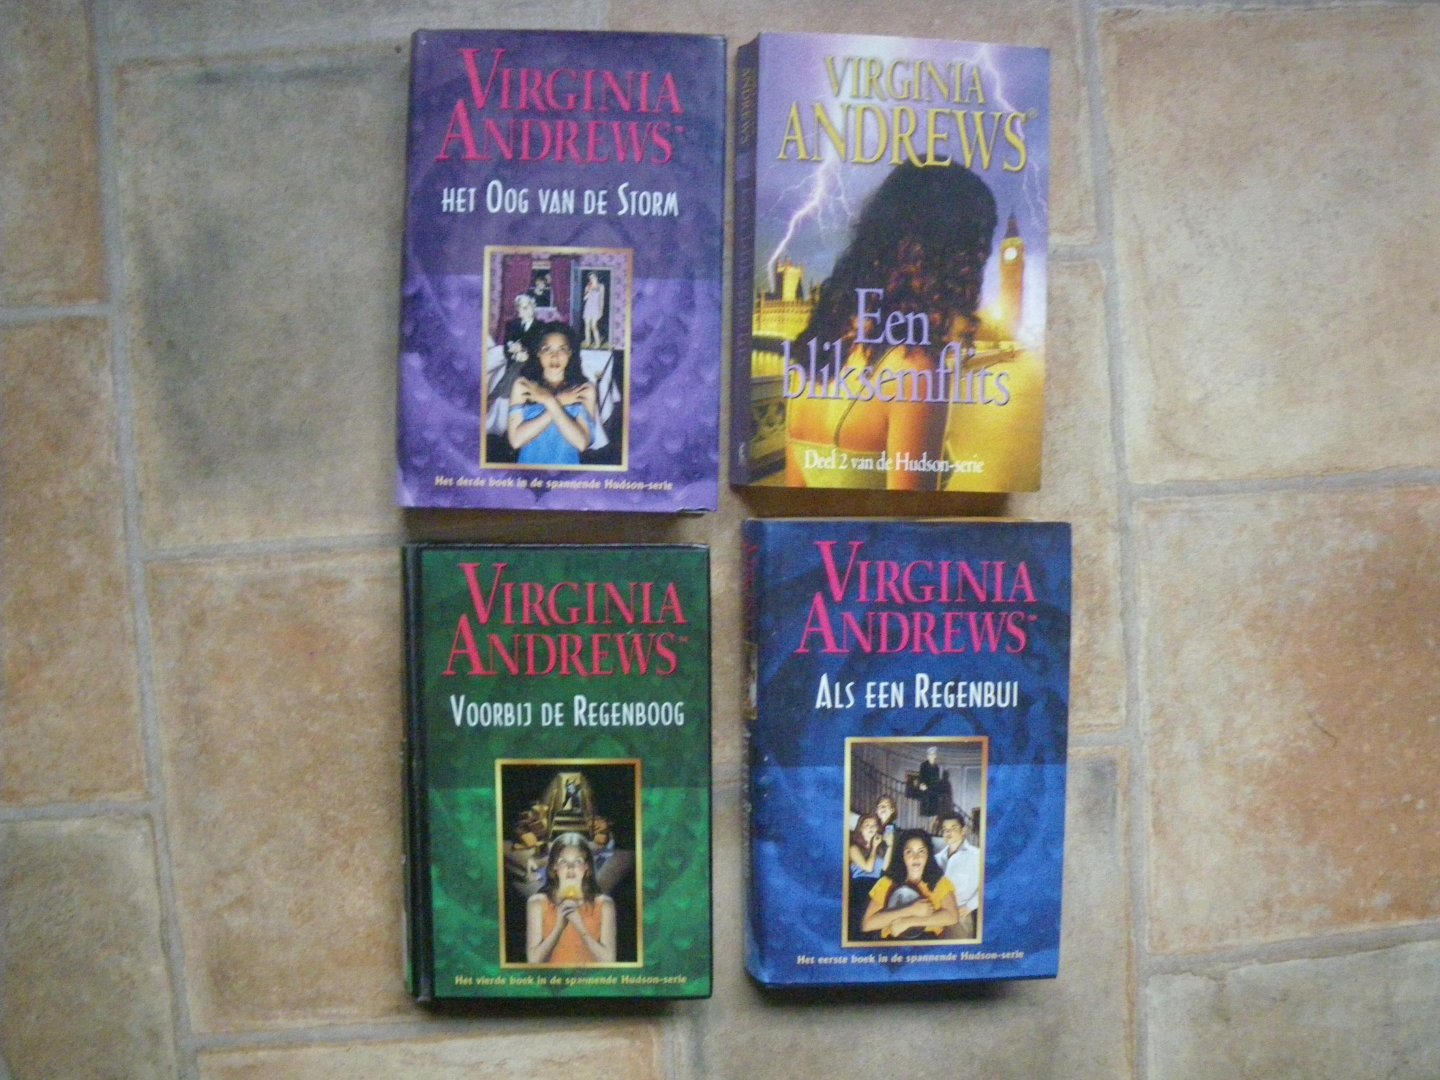 Andrews, Virginia - Hudson-serie Deel 1, 2 ,3 en 4 Als een regenbui Een bliksemflits Het oog van de storm, voorbij de regenboog